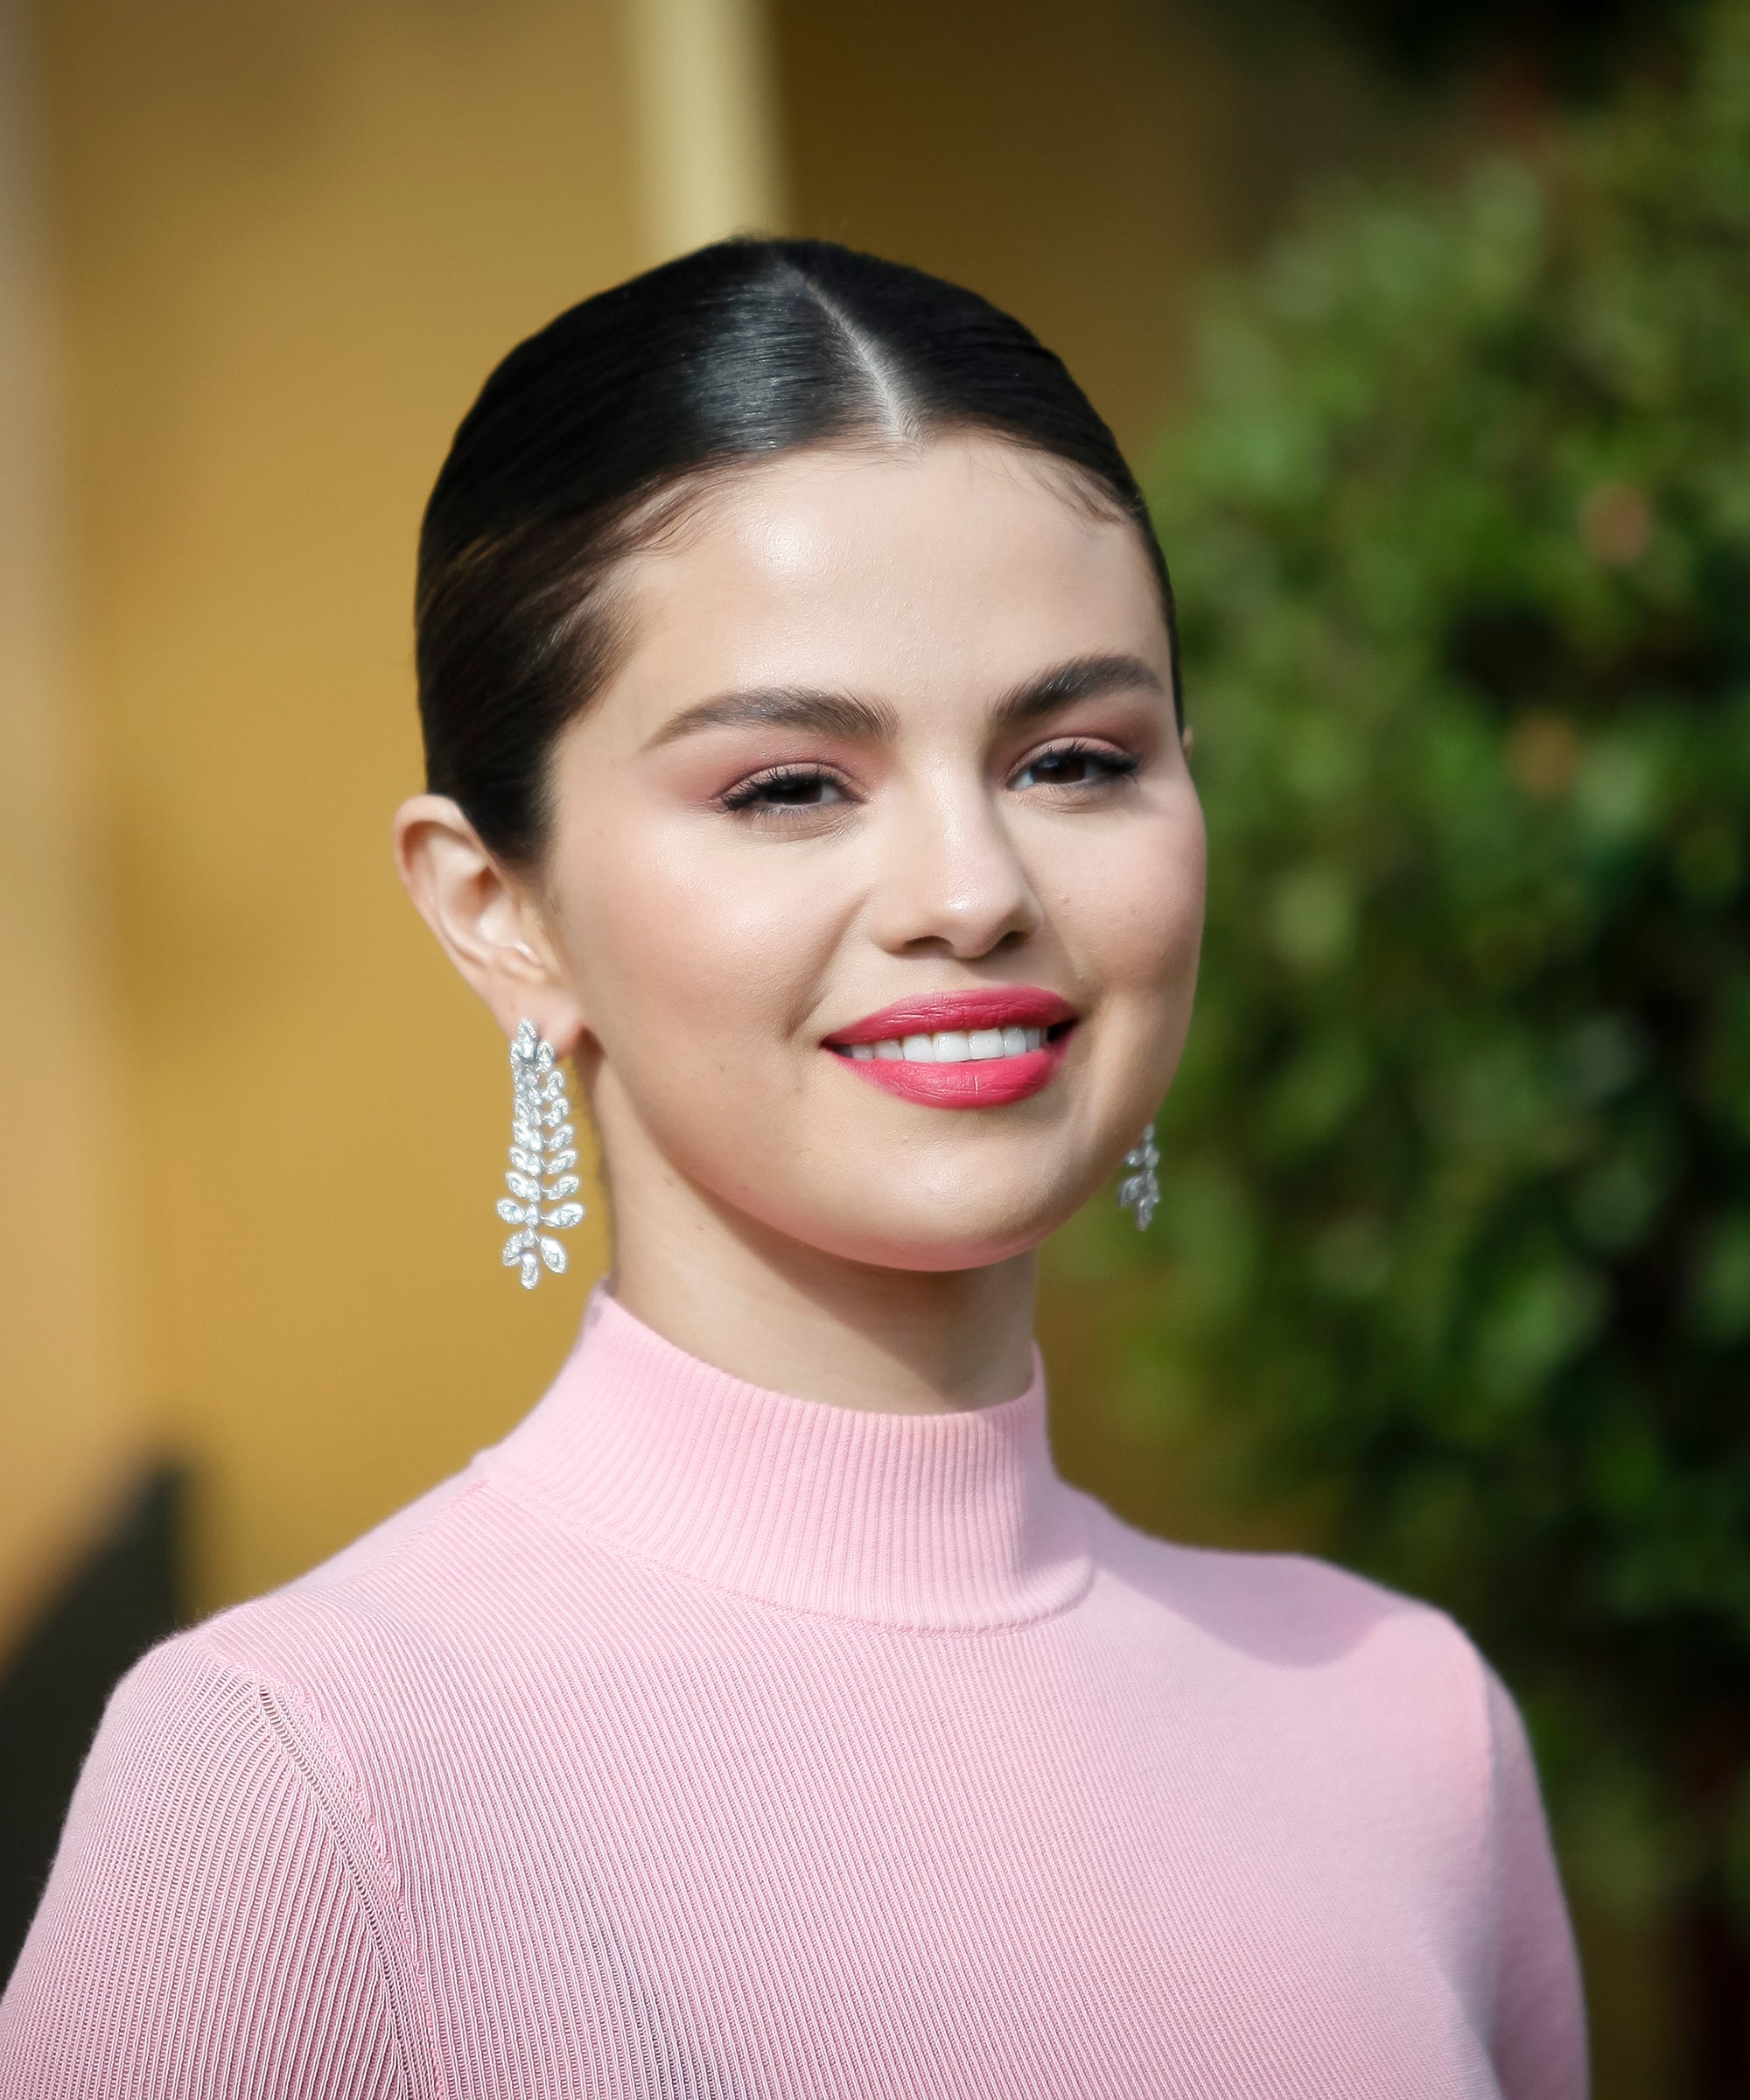 Selena Gomez's Rare Beauty Launches at Sephora - sarafinasaid